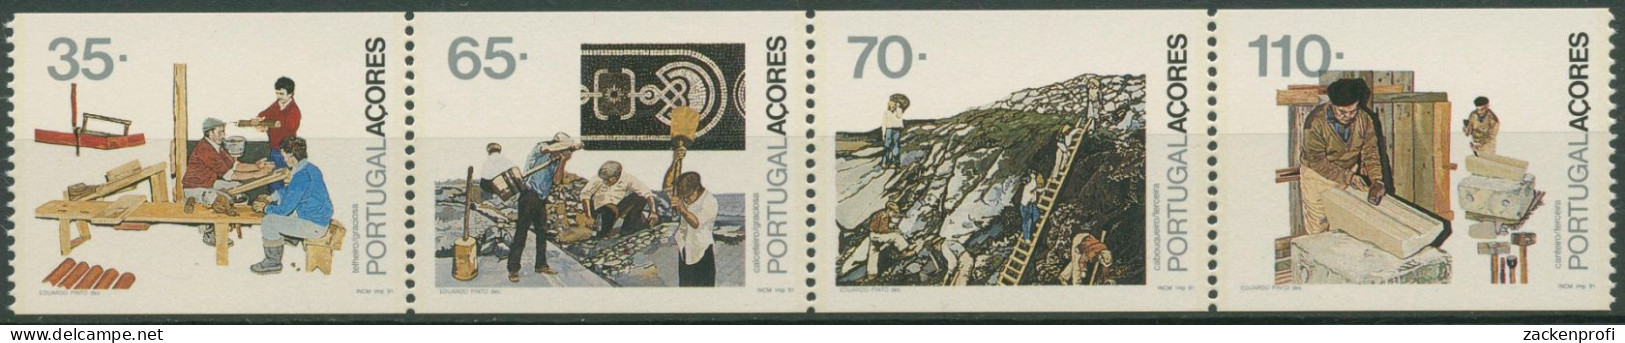 Portugal - Azoren 1991 Berufe Heftchenblatt H-Bl. 10 Postfrisch (C98418) - Açores